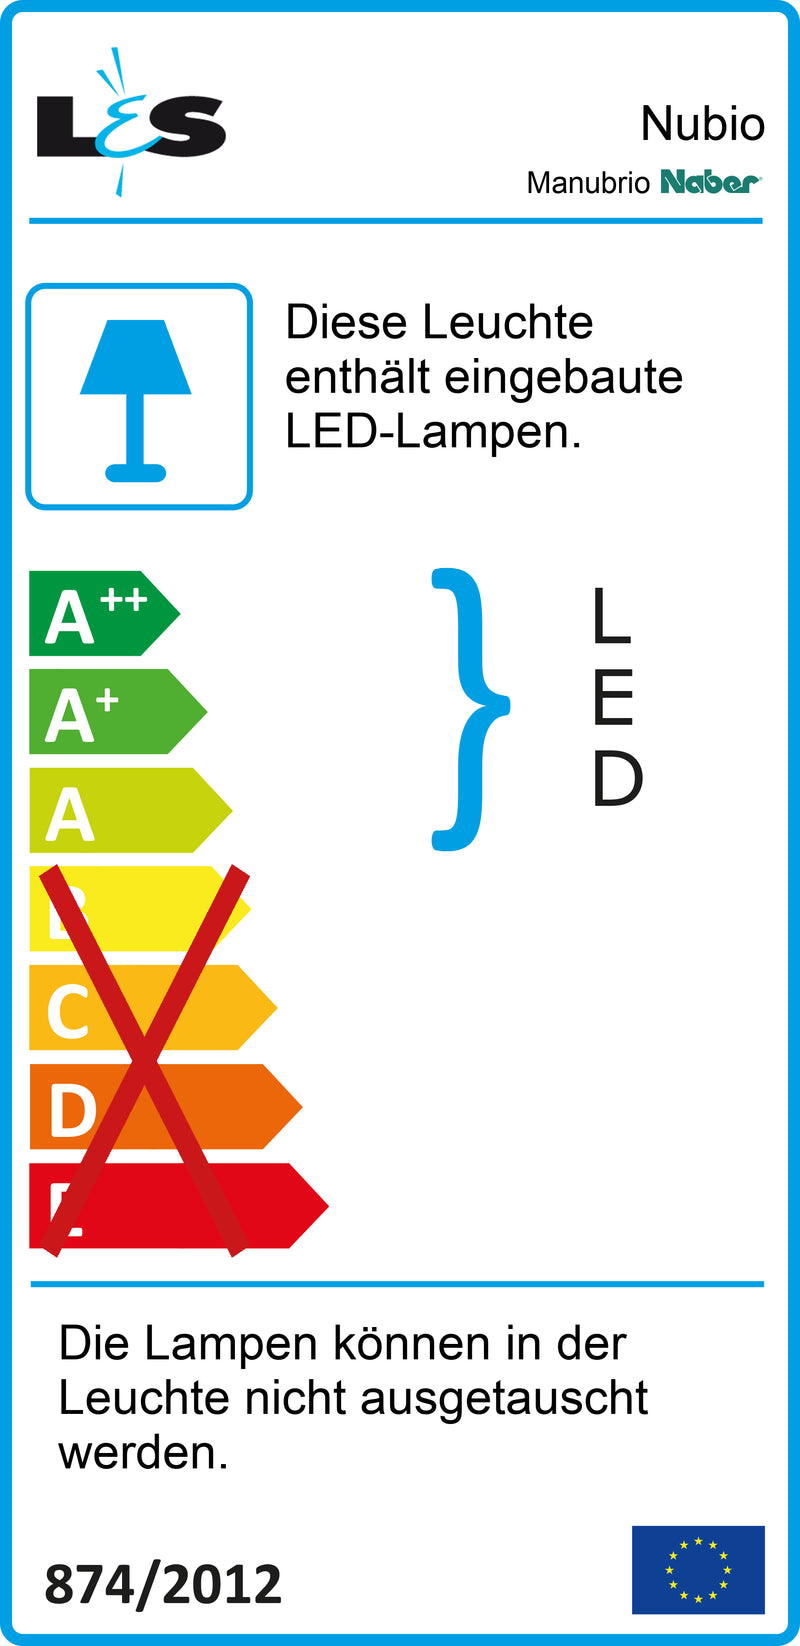 E-Label zu Manubrio LED Set 3 als Variante für Inselgröße bis max. 380 x 135 cm von Naber GmbH in der Kategorie Lichttechnik in Österreich auf conceptshop.at